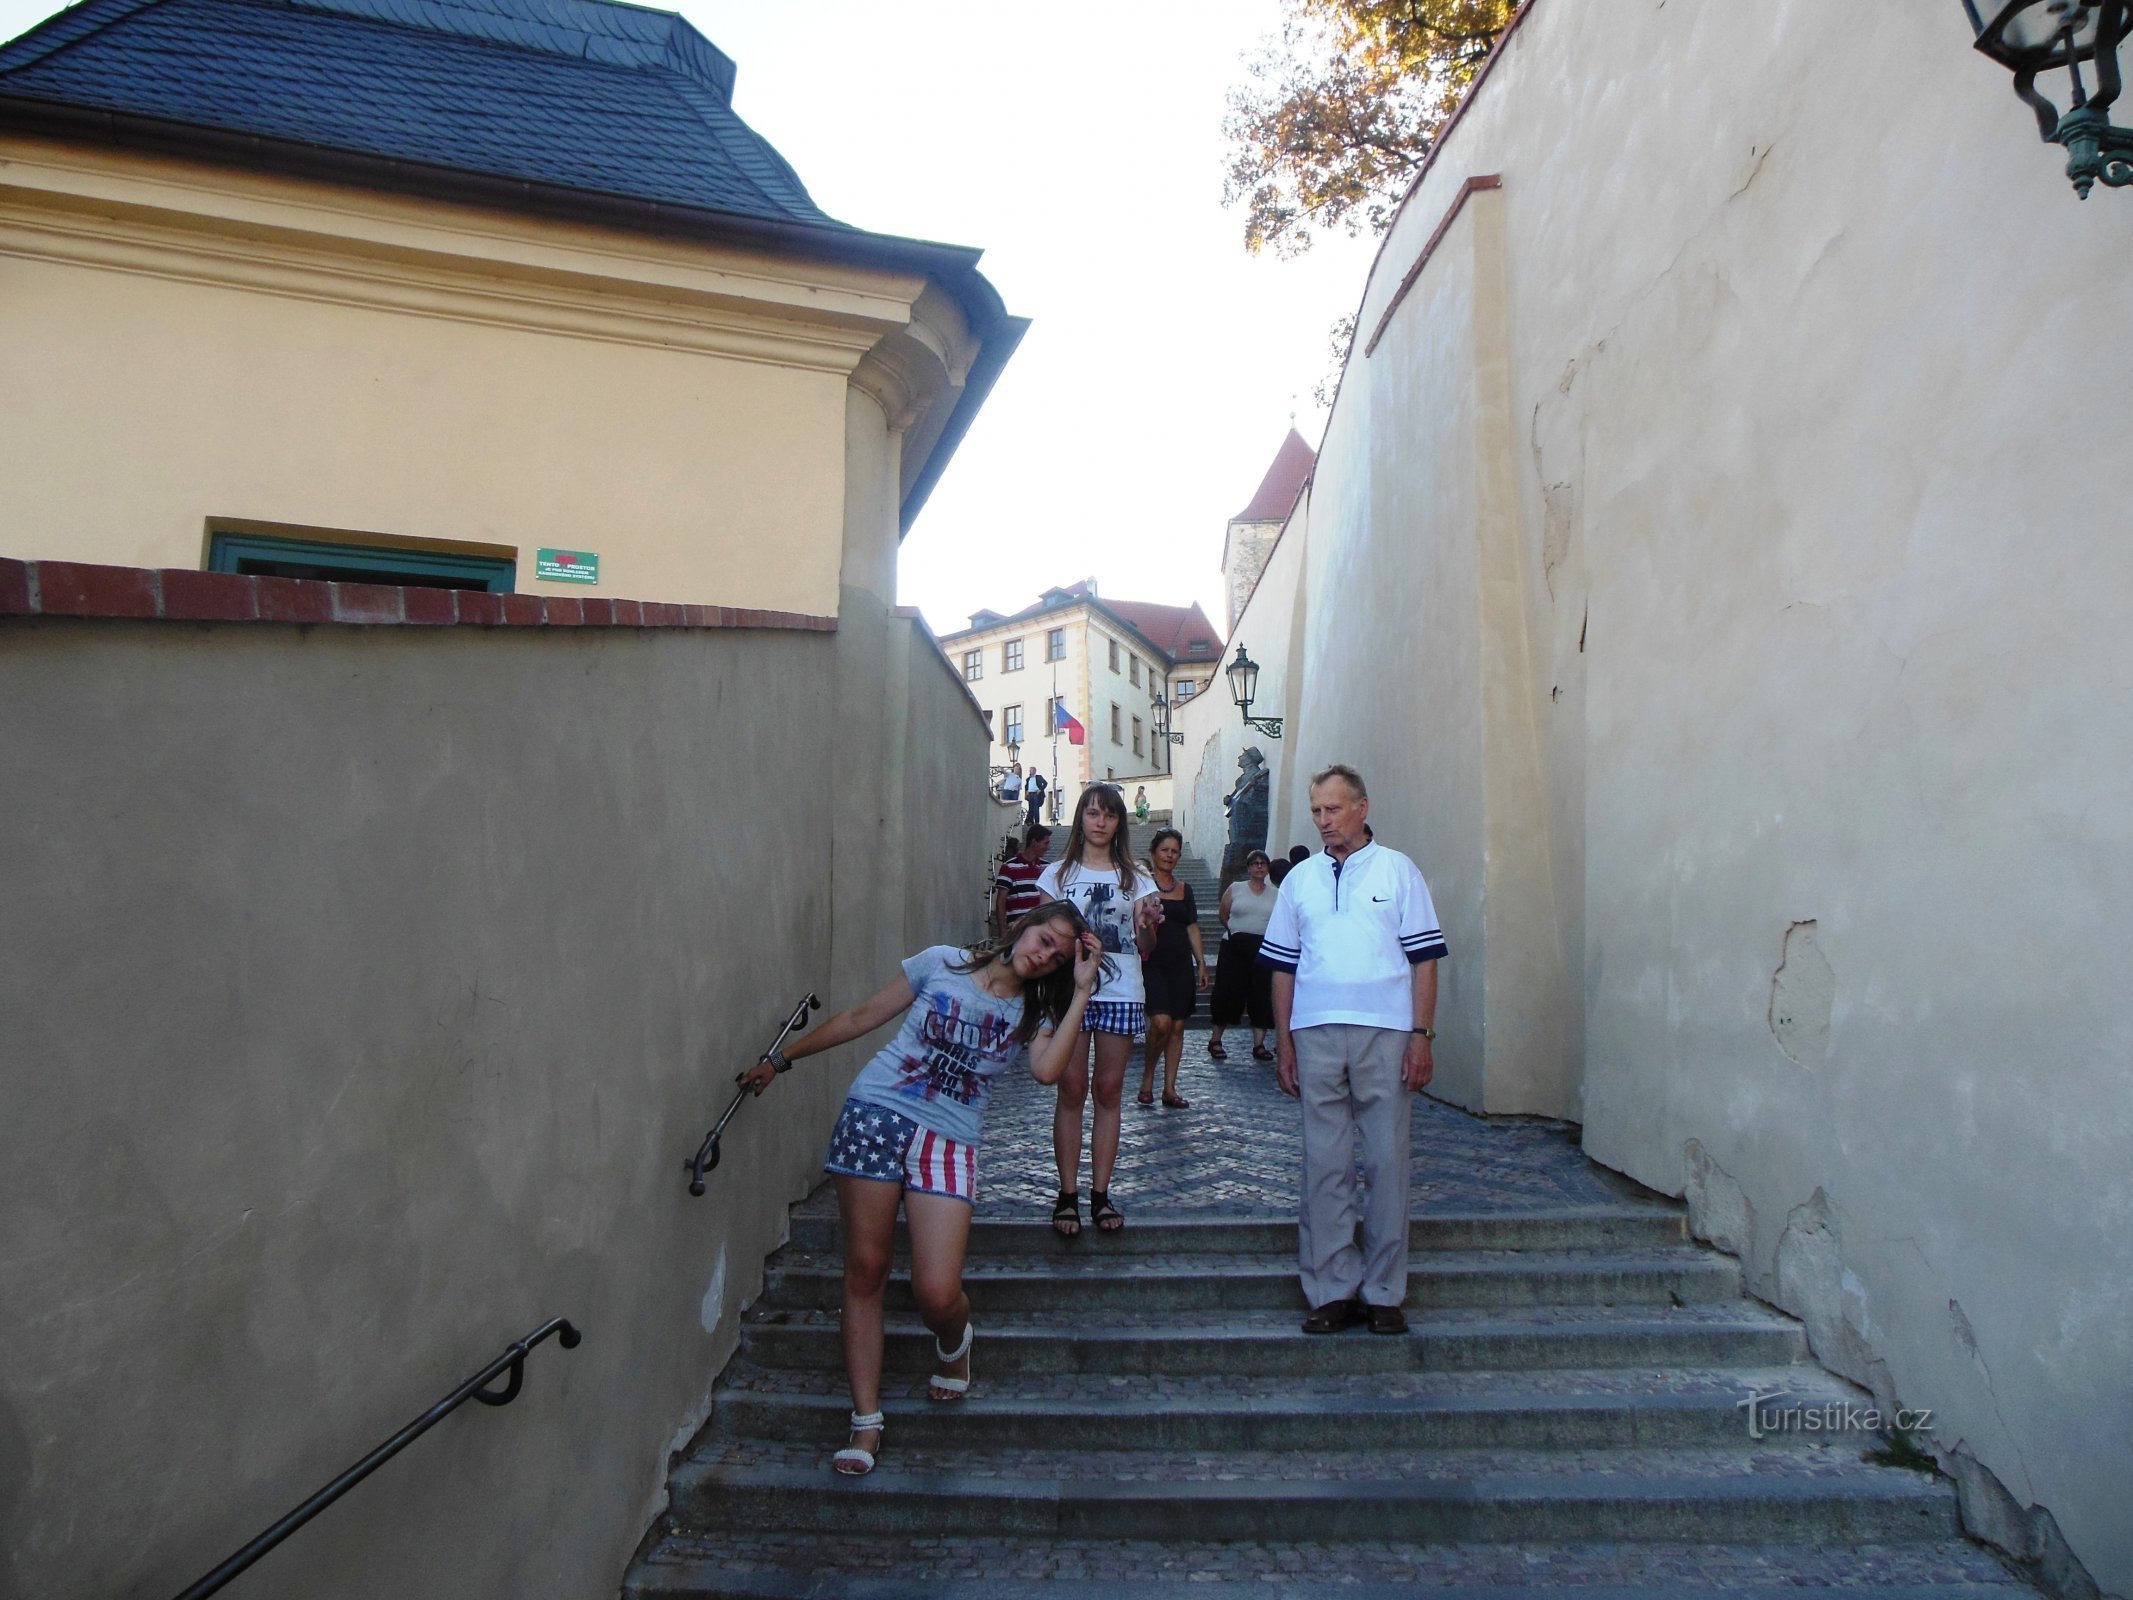 W górę starymi zamkowymi schodami, w górę kamiennymi schodami... jak śpiewał Waldemar Matuška